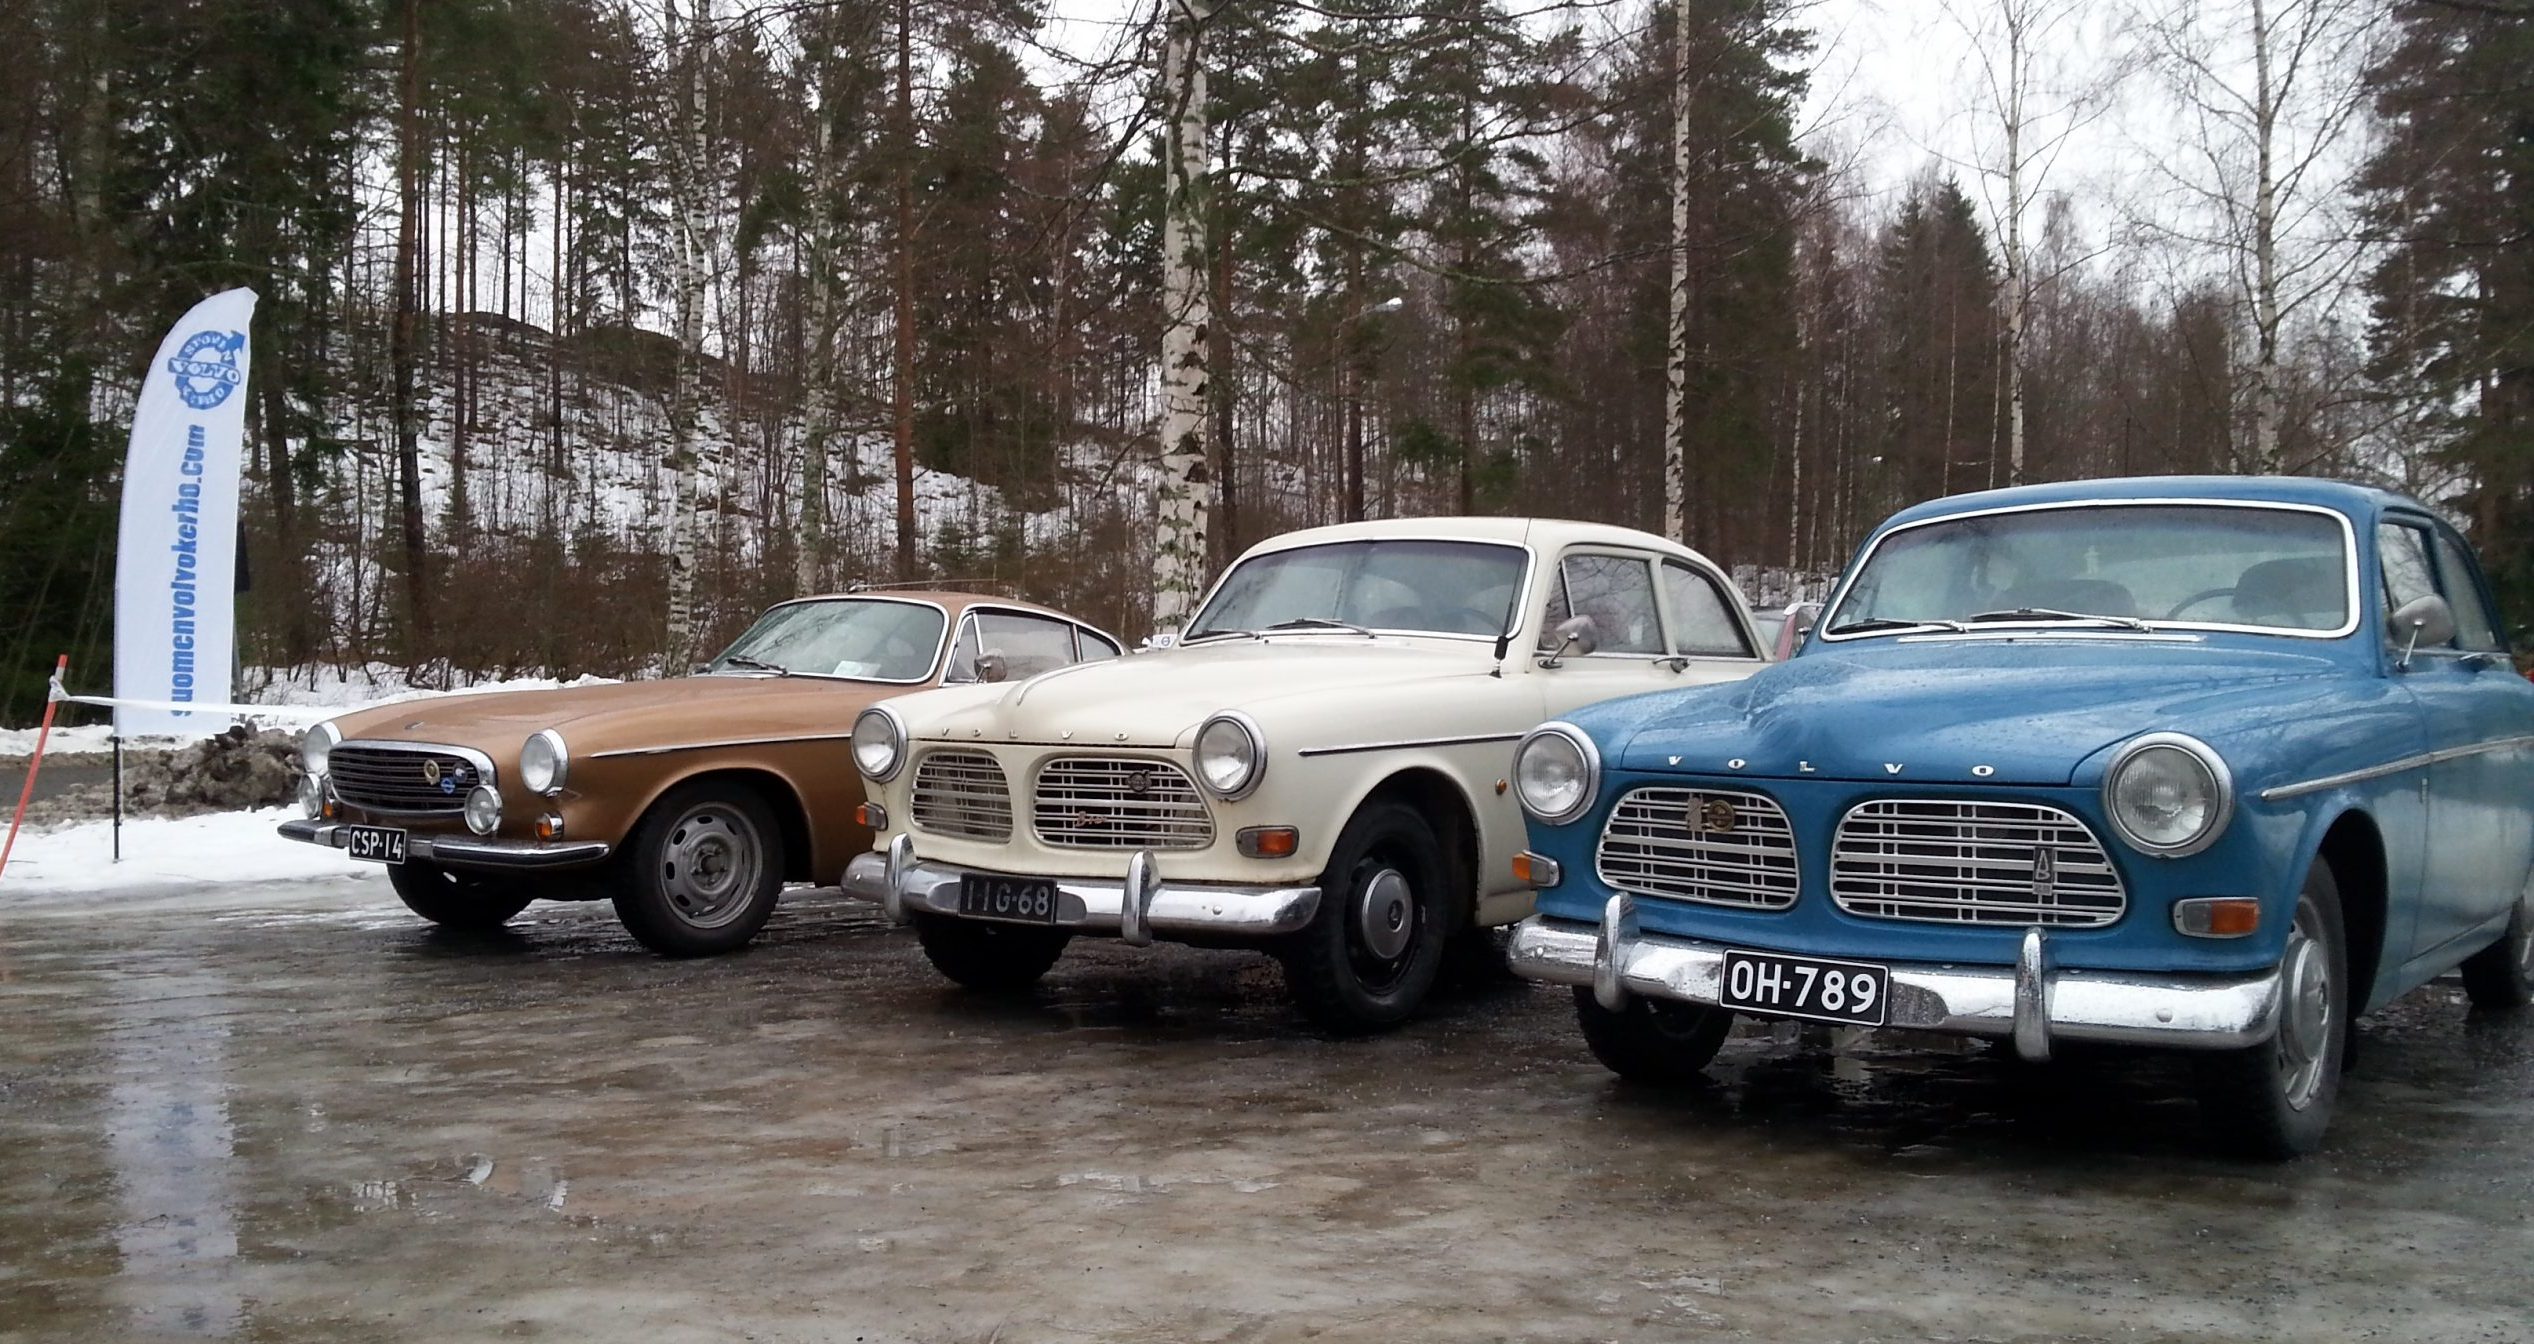 Kolme vanhaa, komeassa kunnossa olevaa Volvoa rivissä talvisella parkkialueella.